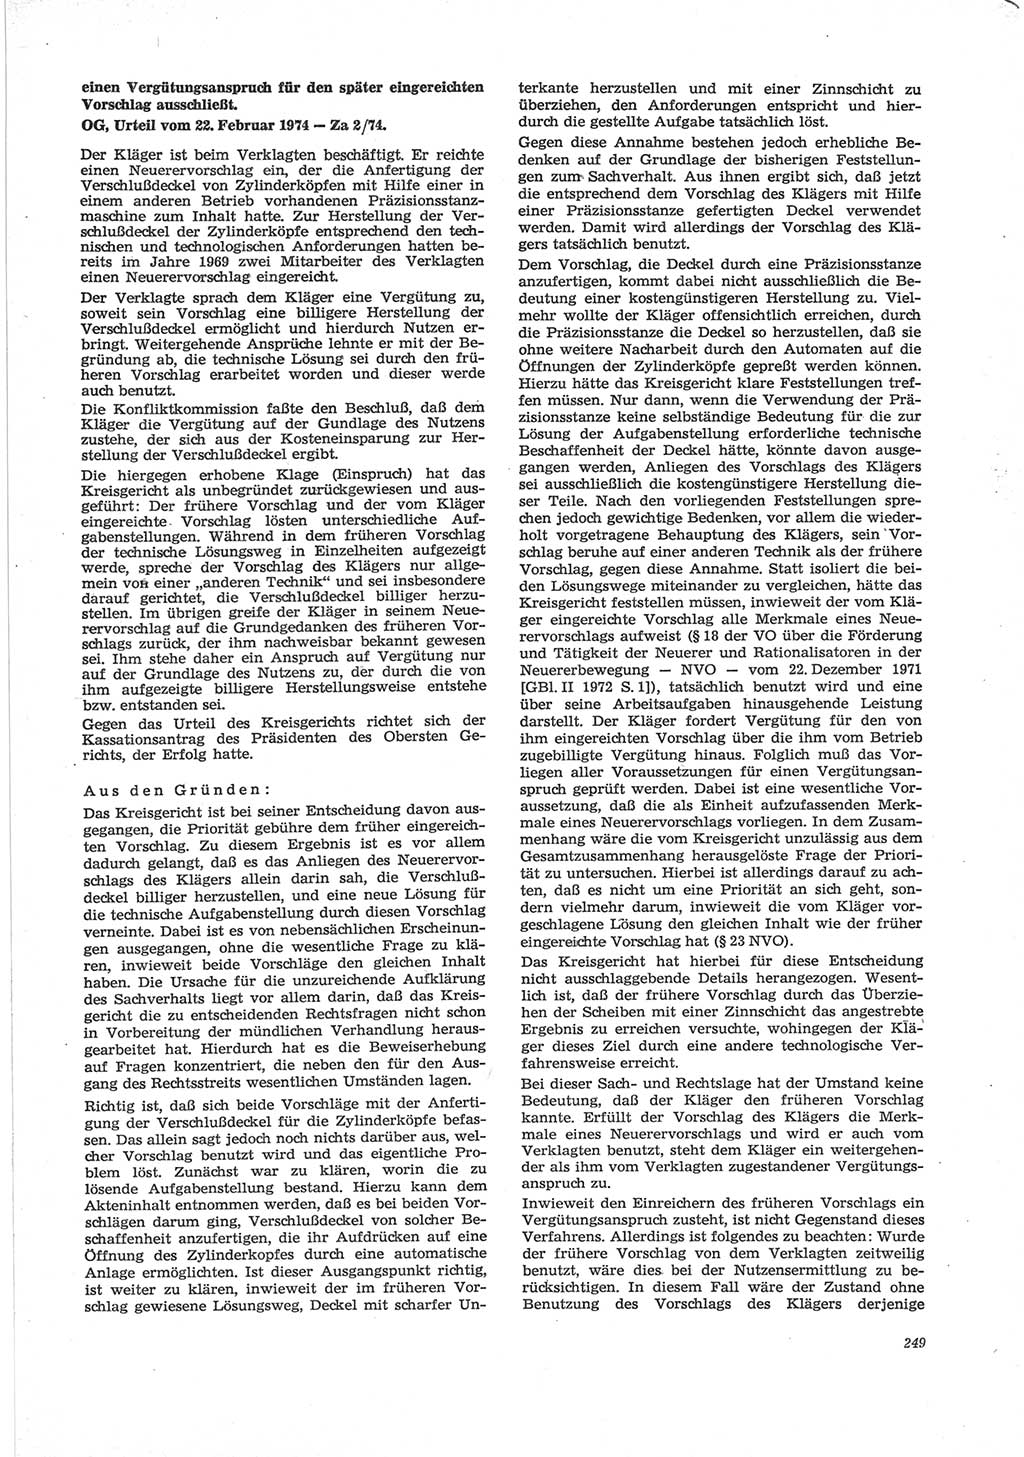 Neue Justiz (NJ), Zeitschrift für Recht und Rechtswissenschaft [Deutsche Demokratische Republik (DDR)], 28. Jahrgang 1974, Seite 249 (NJ DDR 1974, S. 249)